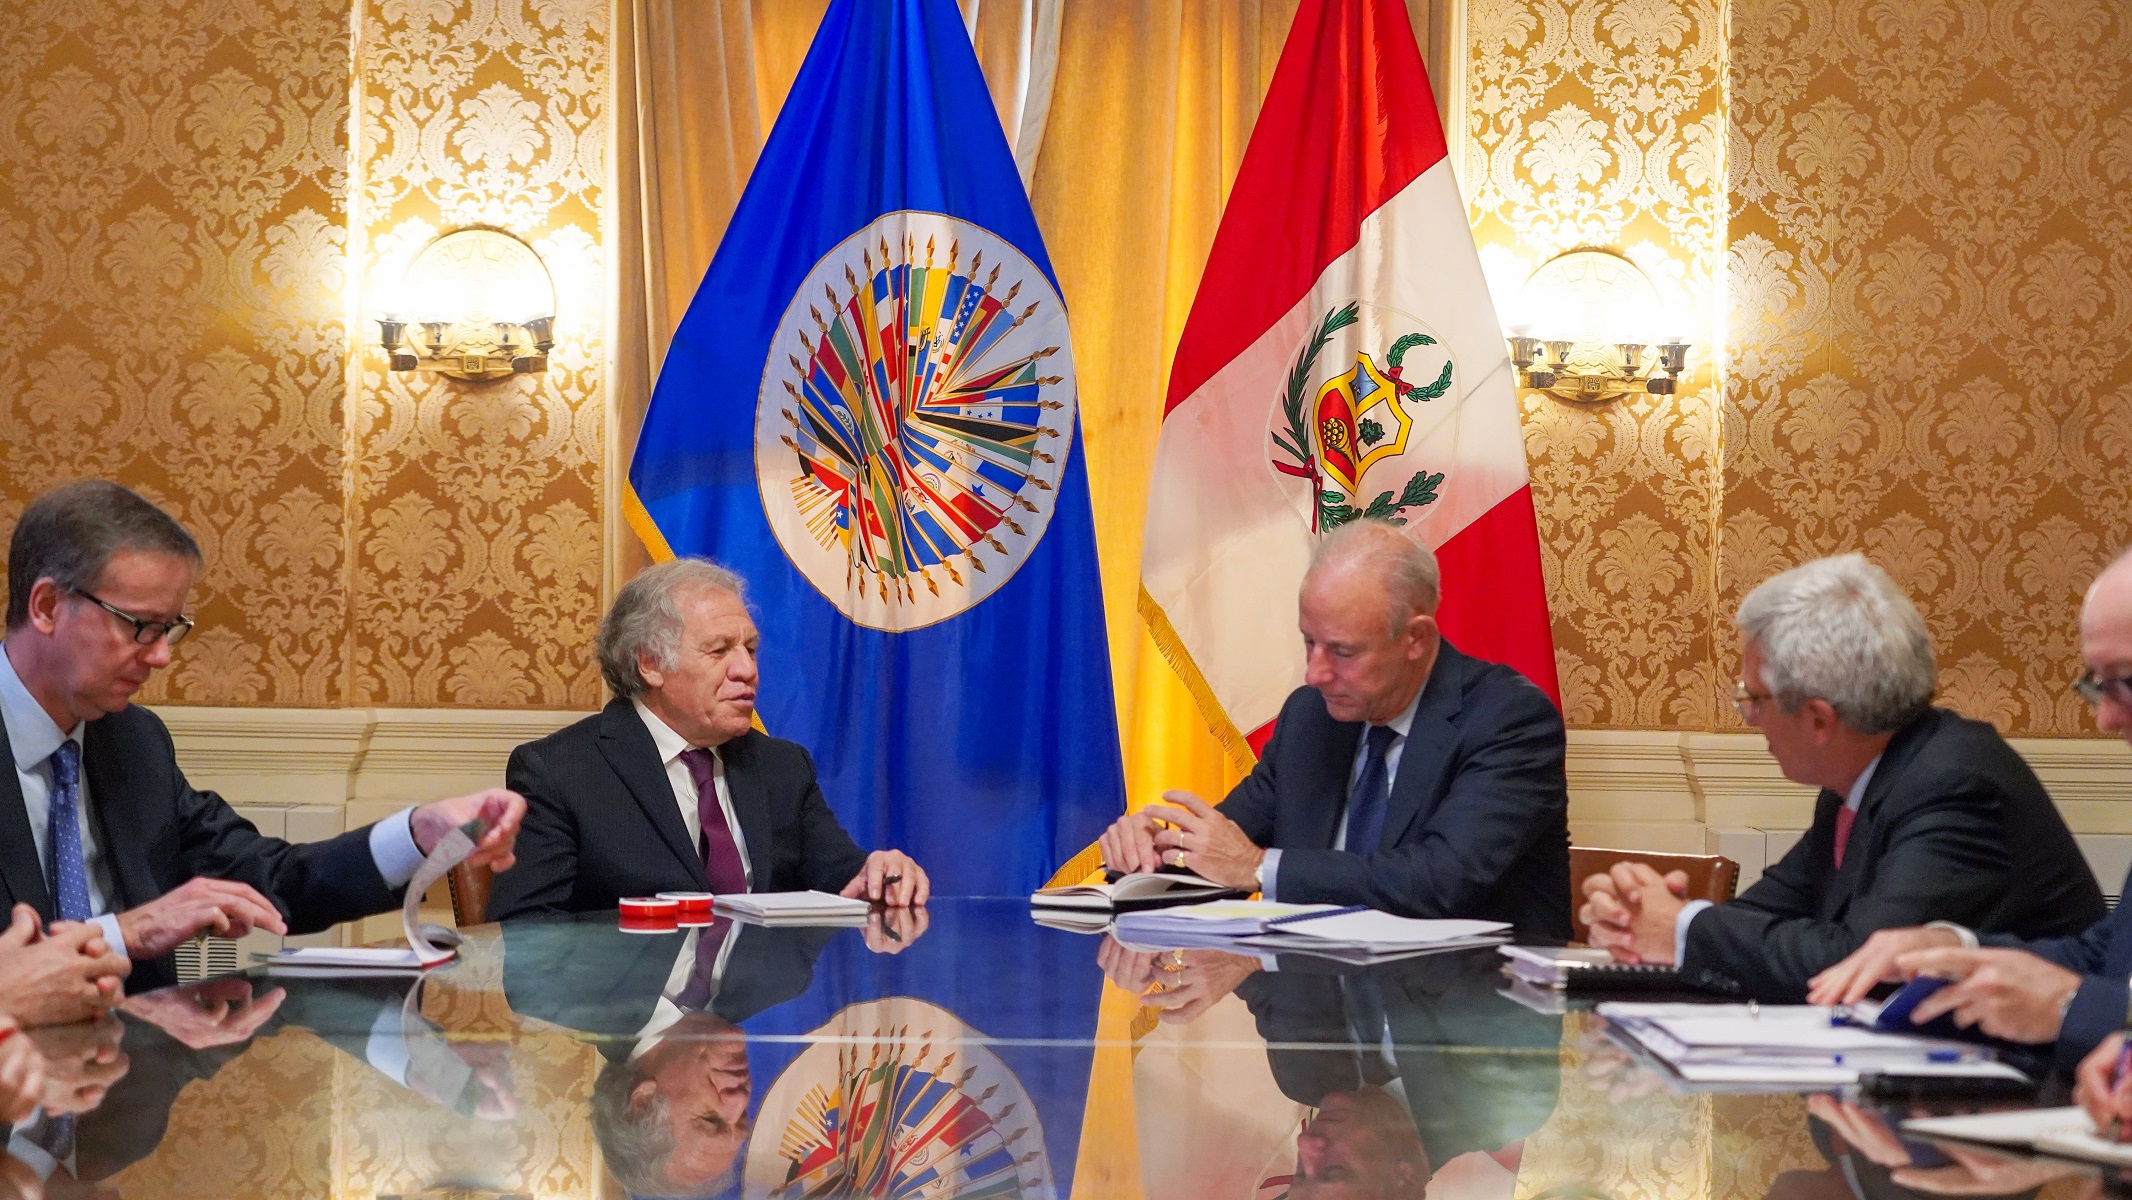 Canciller Javier González-Olaechea Franco, sostuvo reunión con el secretario general OEA y congresistas de EE.UU. en visita oficial al país norteamericano.